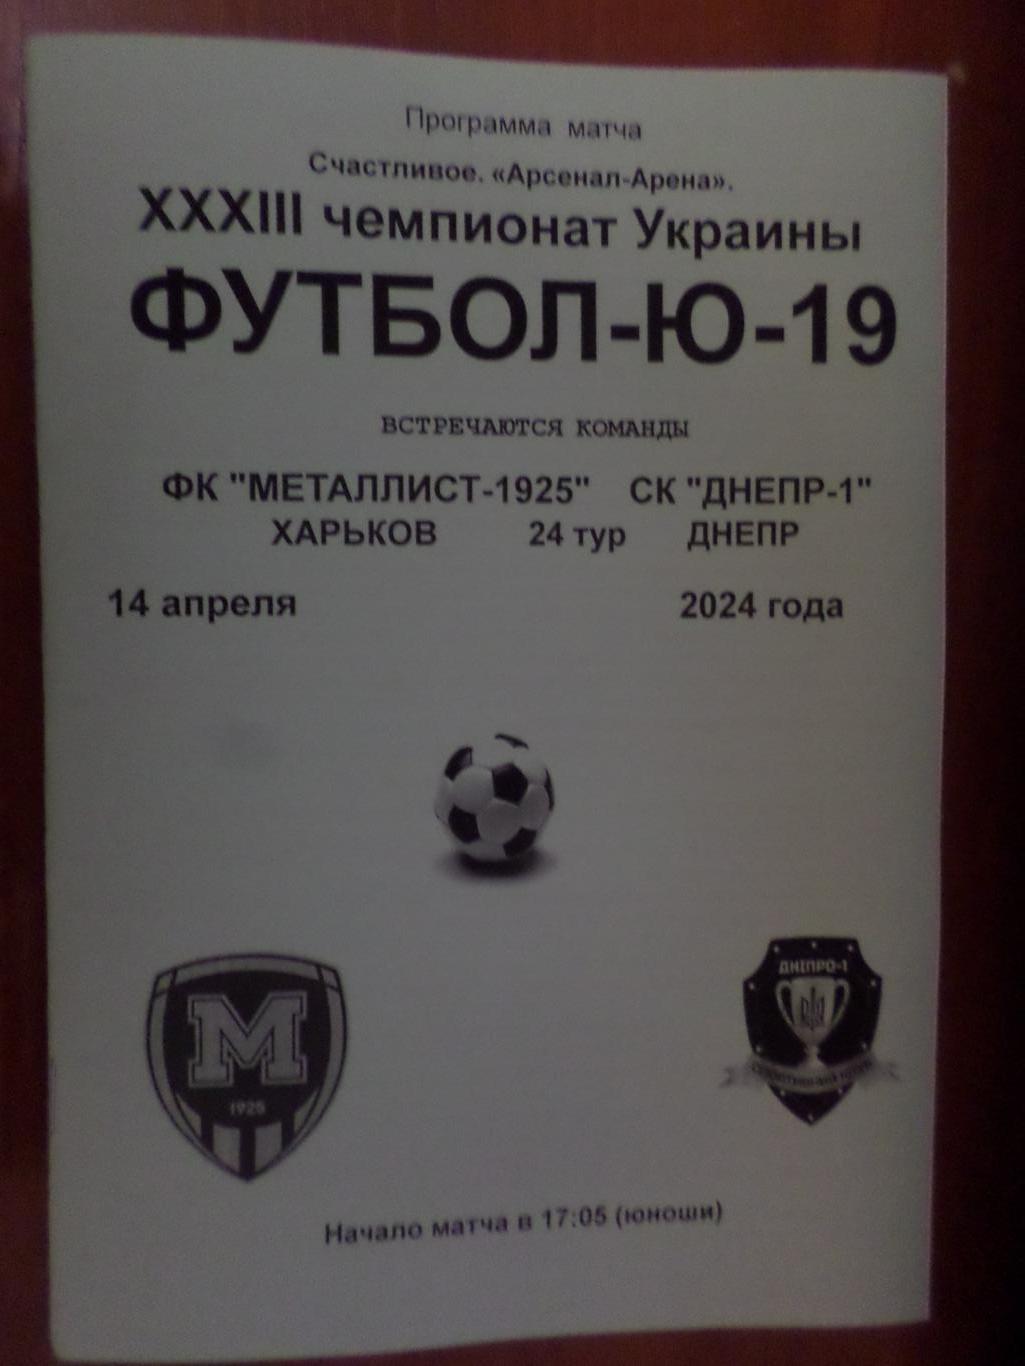 программа Металлист-1925 Харьков - СК Днепр-1 Днепропетровск 2024 г Ю-19